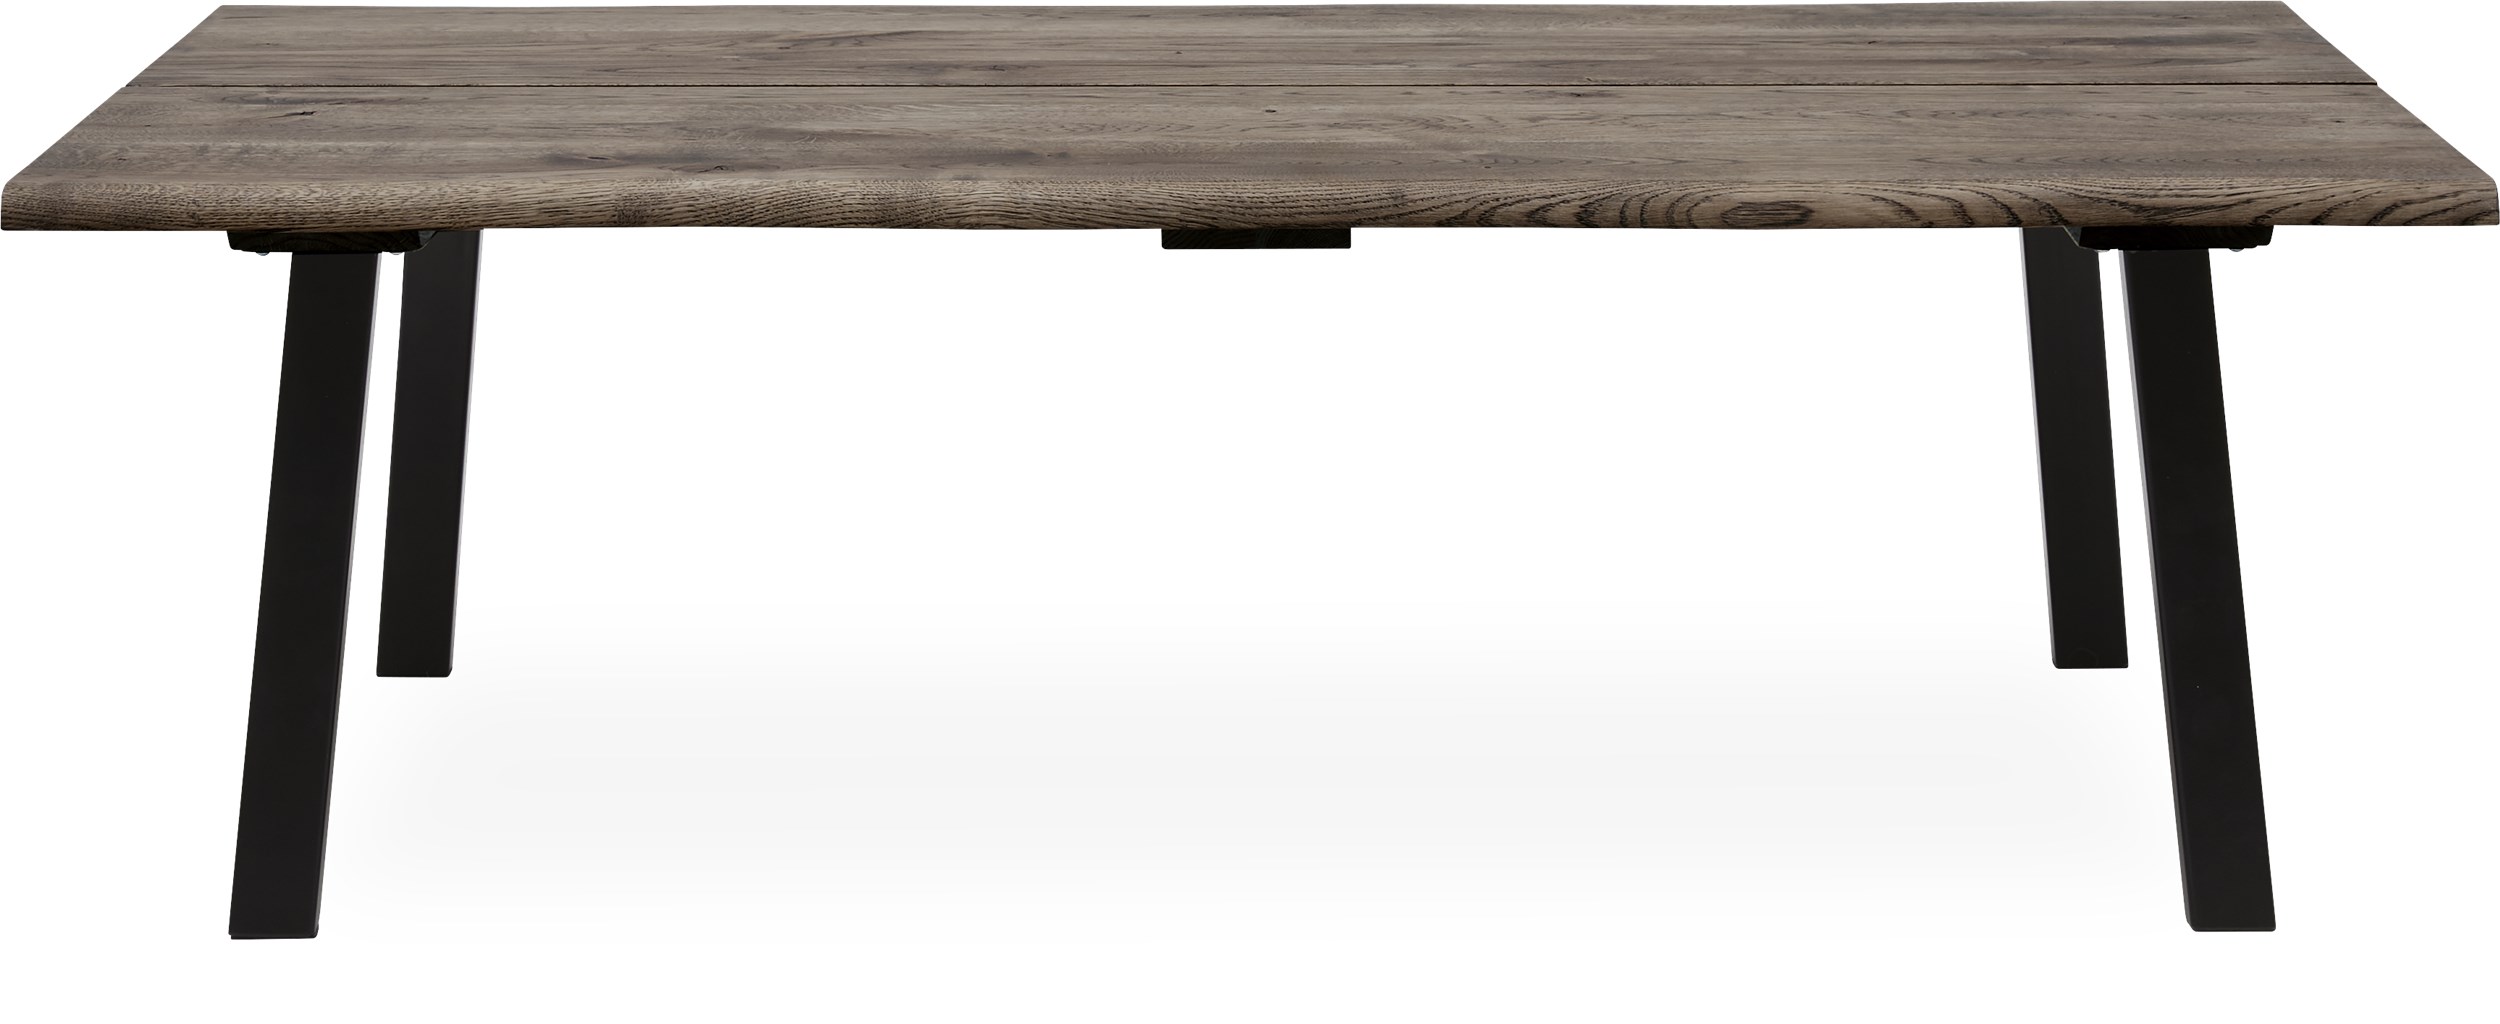 True Soffbord 140 x 45 x 80 cm - Bordsskiva i rökfärgad ek och ben i svart pulverlackerad metall